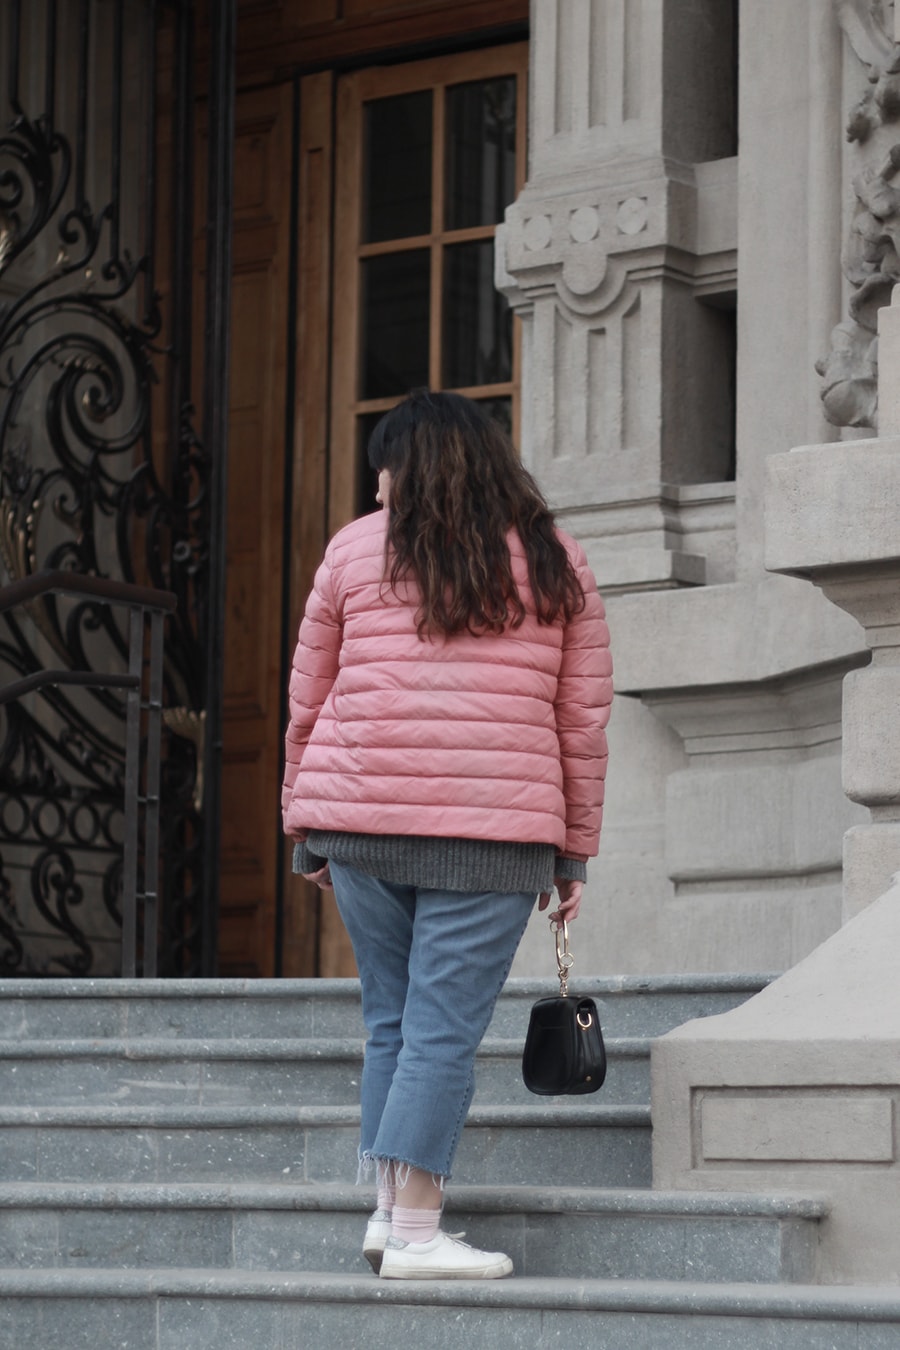 Millennial pink - hoop purse handbag - pink and gray - golden strokes